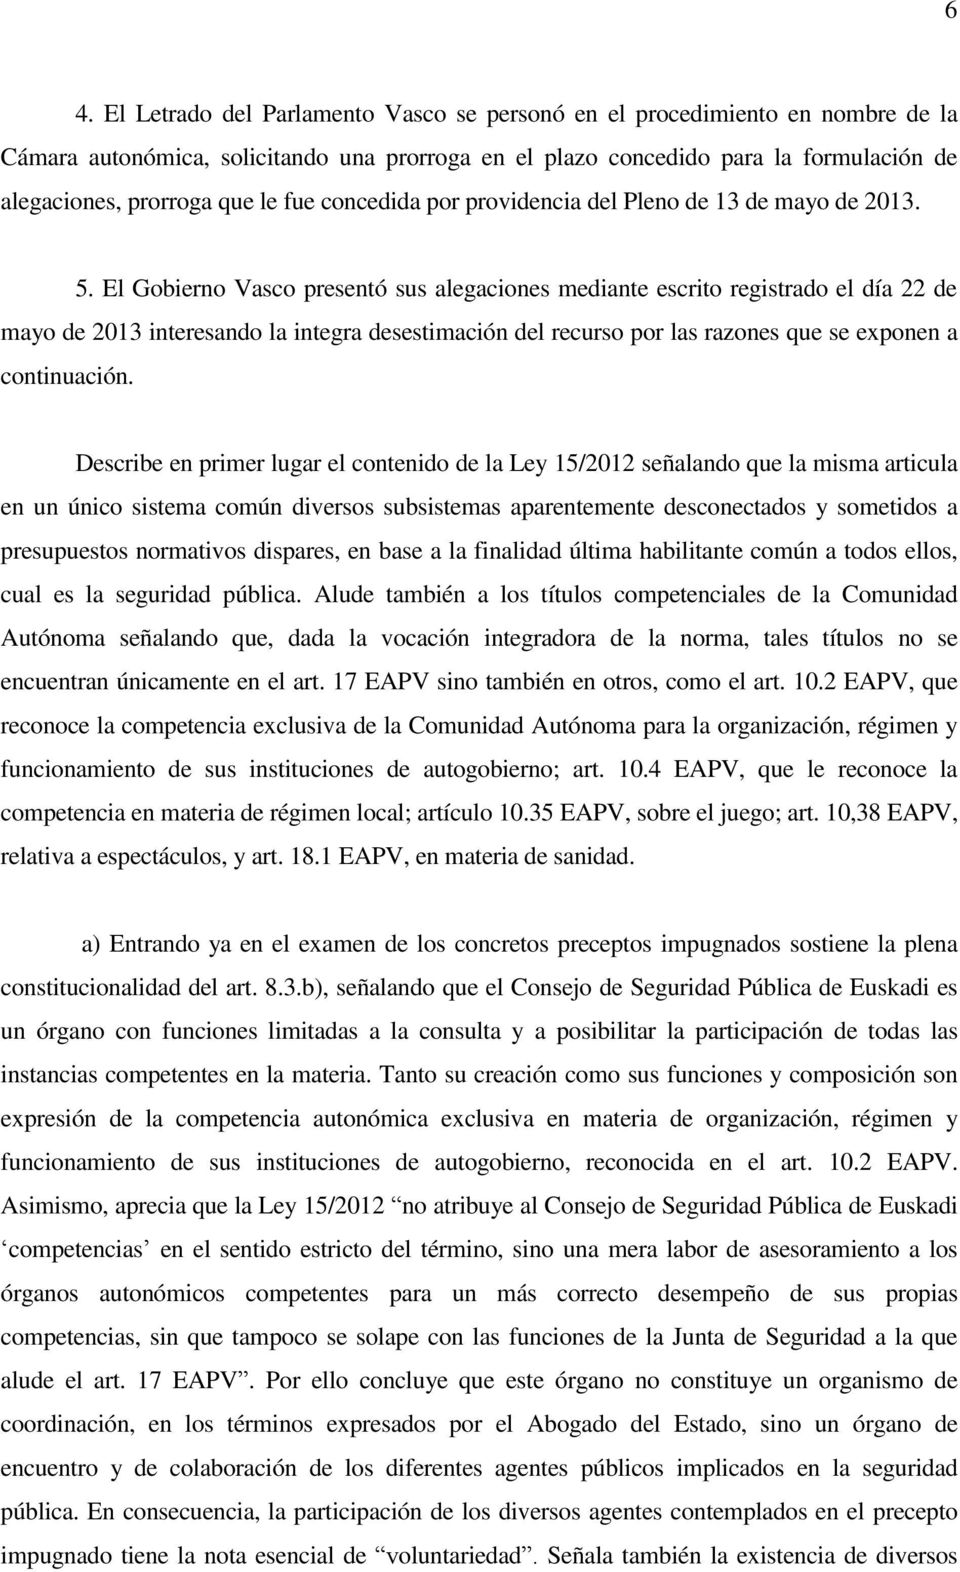 El Gobierno Vasco presentó sus alegaciones mediante escrito registrado el día 22 de mayo de 2013 interesando la integra desestimación del recurso por las razones que se exponen a continuación.